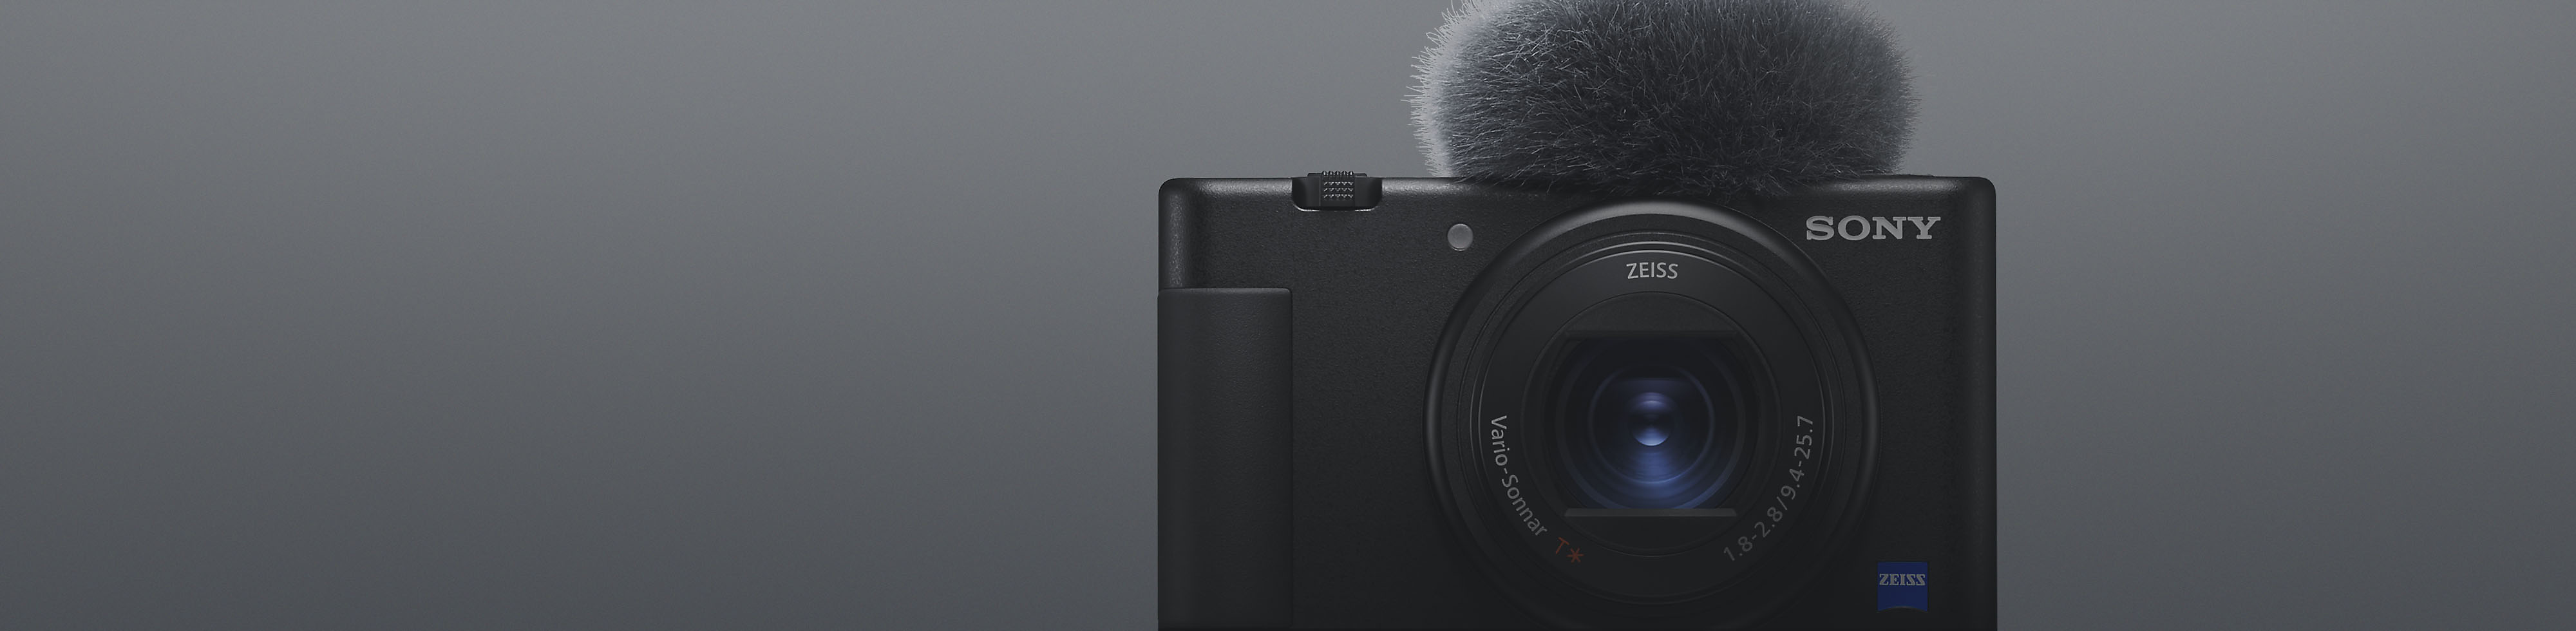 Vista frontal de una cámara compacta negra de Sony con micrófono conectado